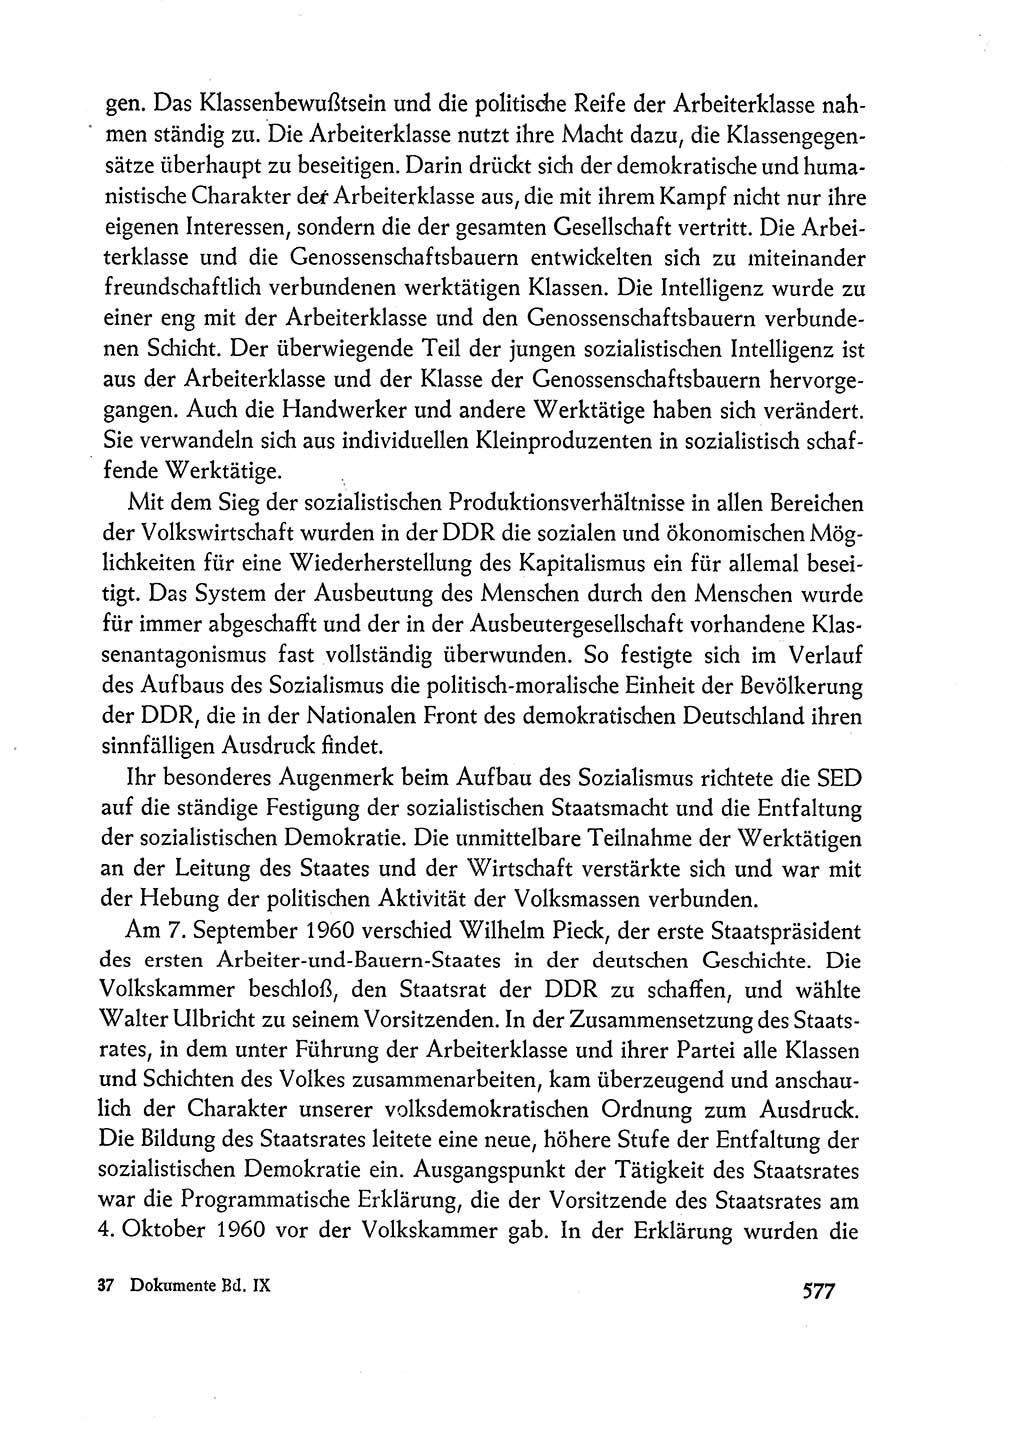 Dokumente der Sozialistischen Einheitspartei Deutschlands (SED) [Deutsche Demokratische Republik (DDR)] 1962-1963, Seite 577 (Dok. SED DDR 1962-1963, S. 577)